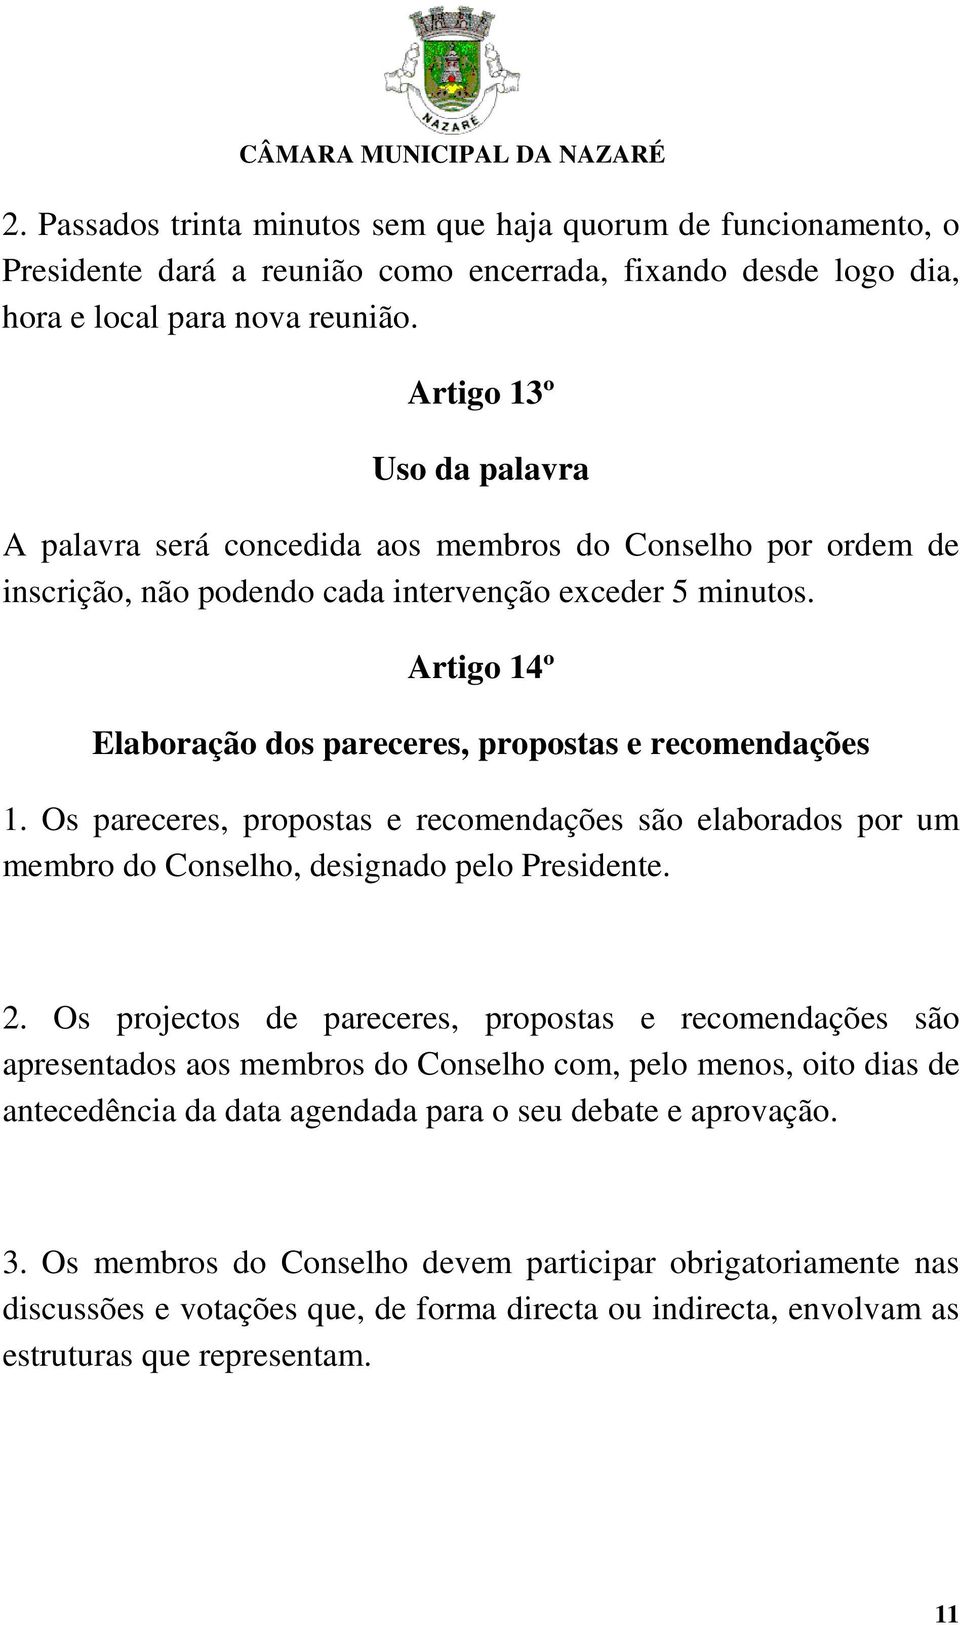 Artigo 14º Elaboração dos pareceres, propostas e recomendações 1. Os pareceres, propostas e recomendações são elaborados por um membro do Conselho, designado pelo Presidente. 2.